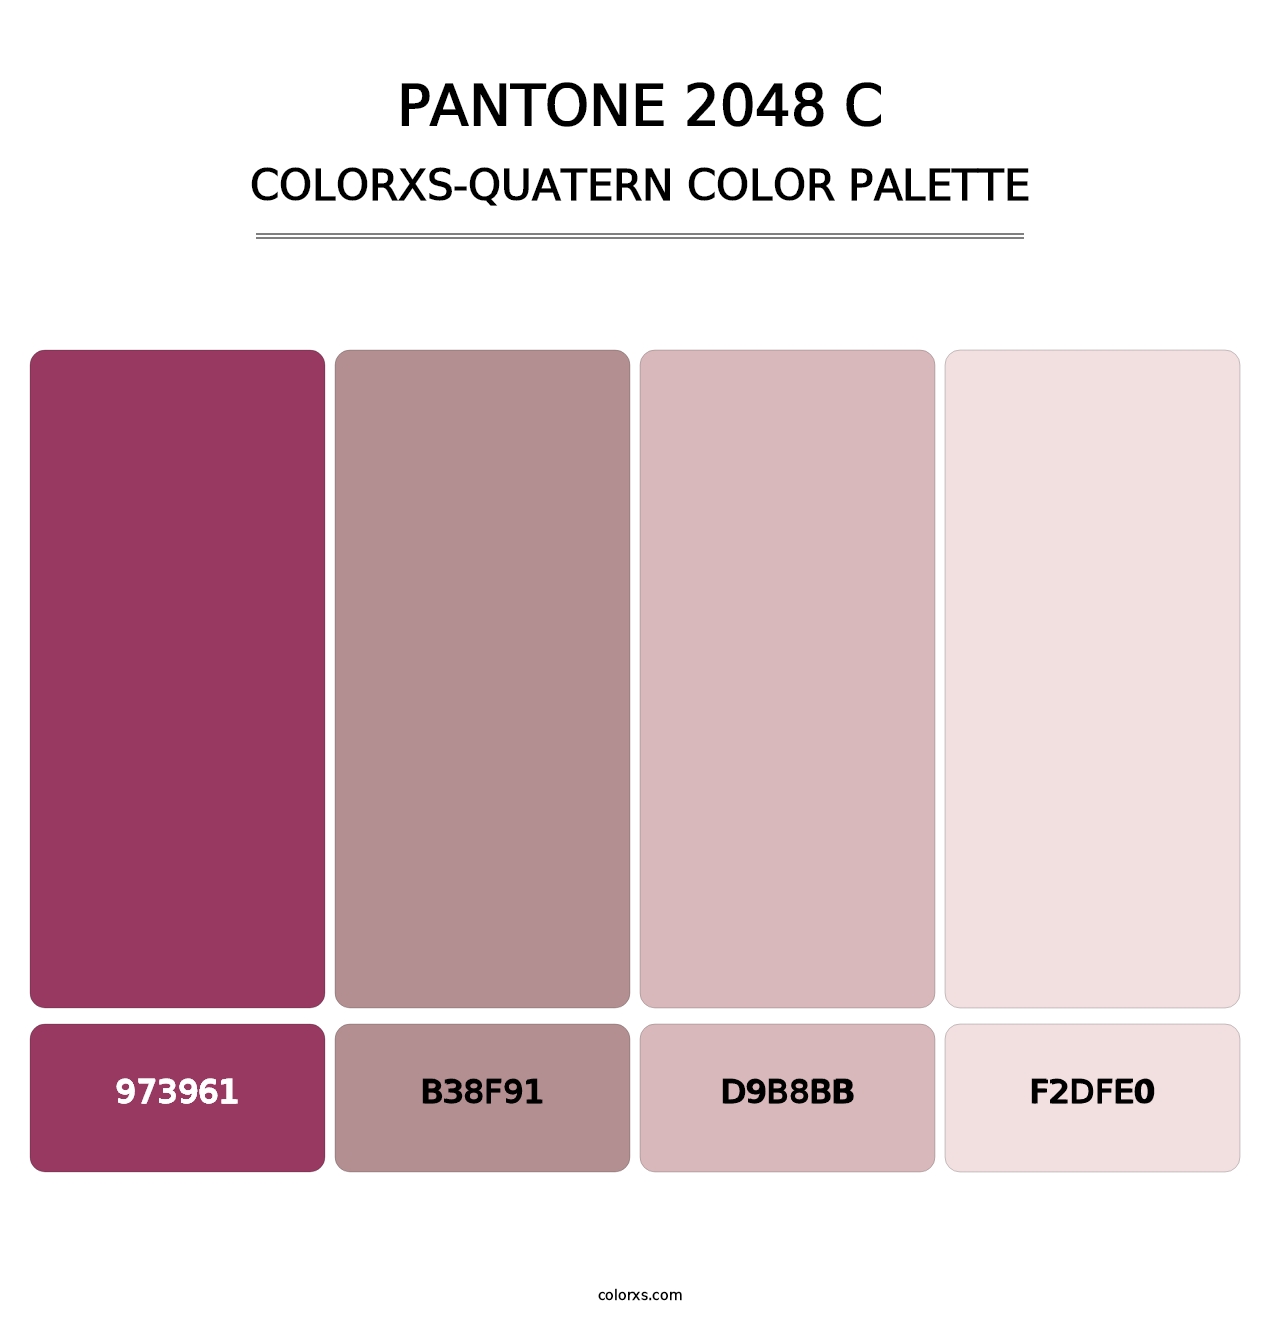 PANTONE 2048 C - Colorxs Quatern Palette